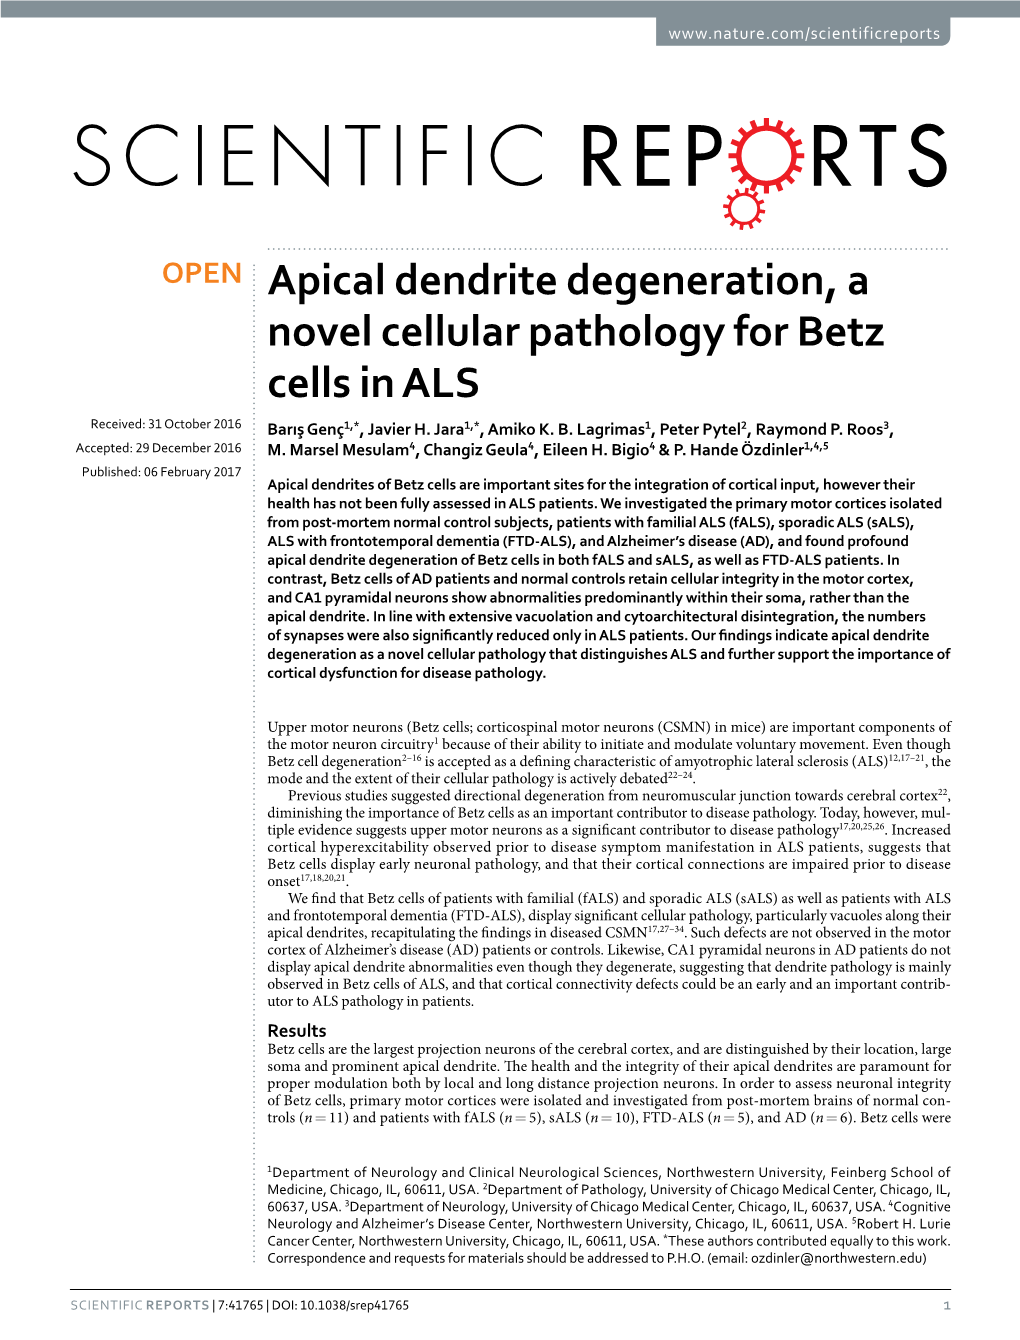 Apical Dendrite Degeneration, a Novel Cellular Pathology for Betz Cells in ALS Received: 31 October 2016 Barış Genç1,*, Javier H